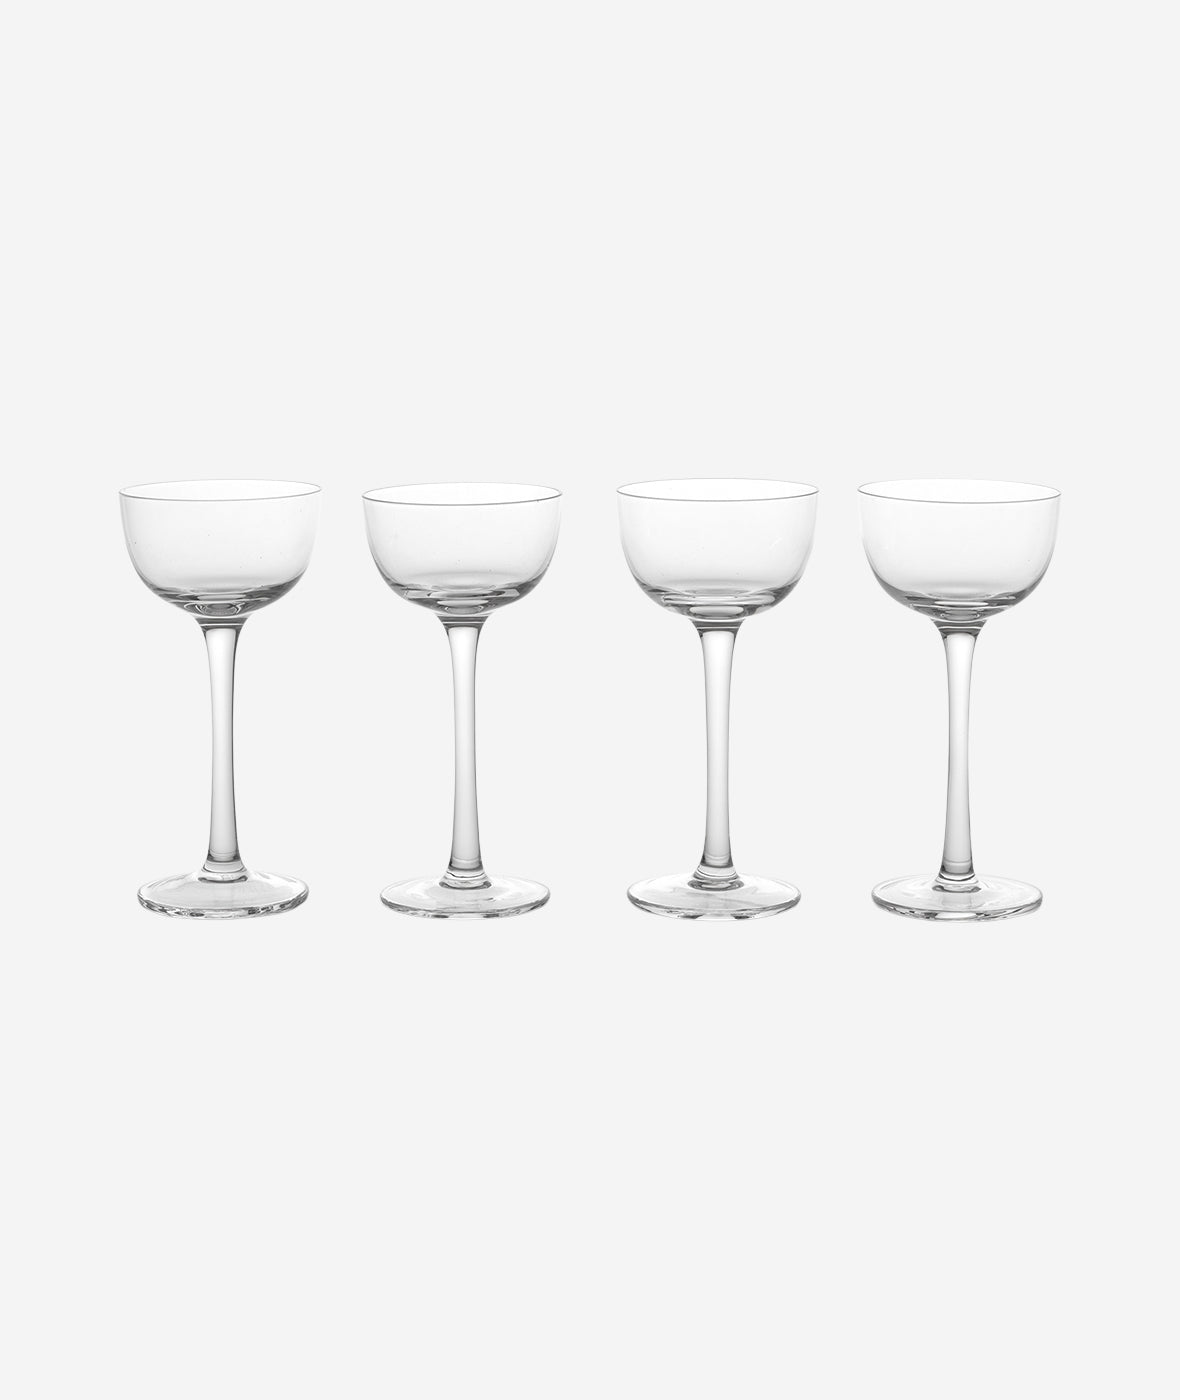 Host Liqueur Glass Set/4 - More Options